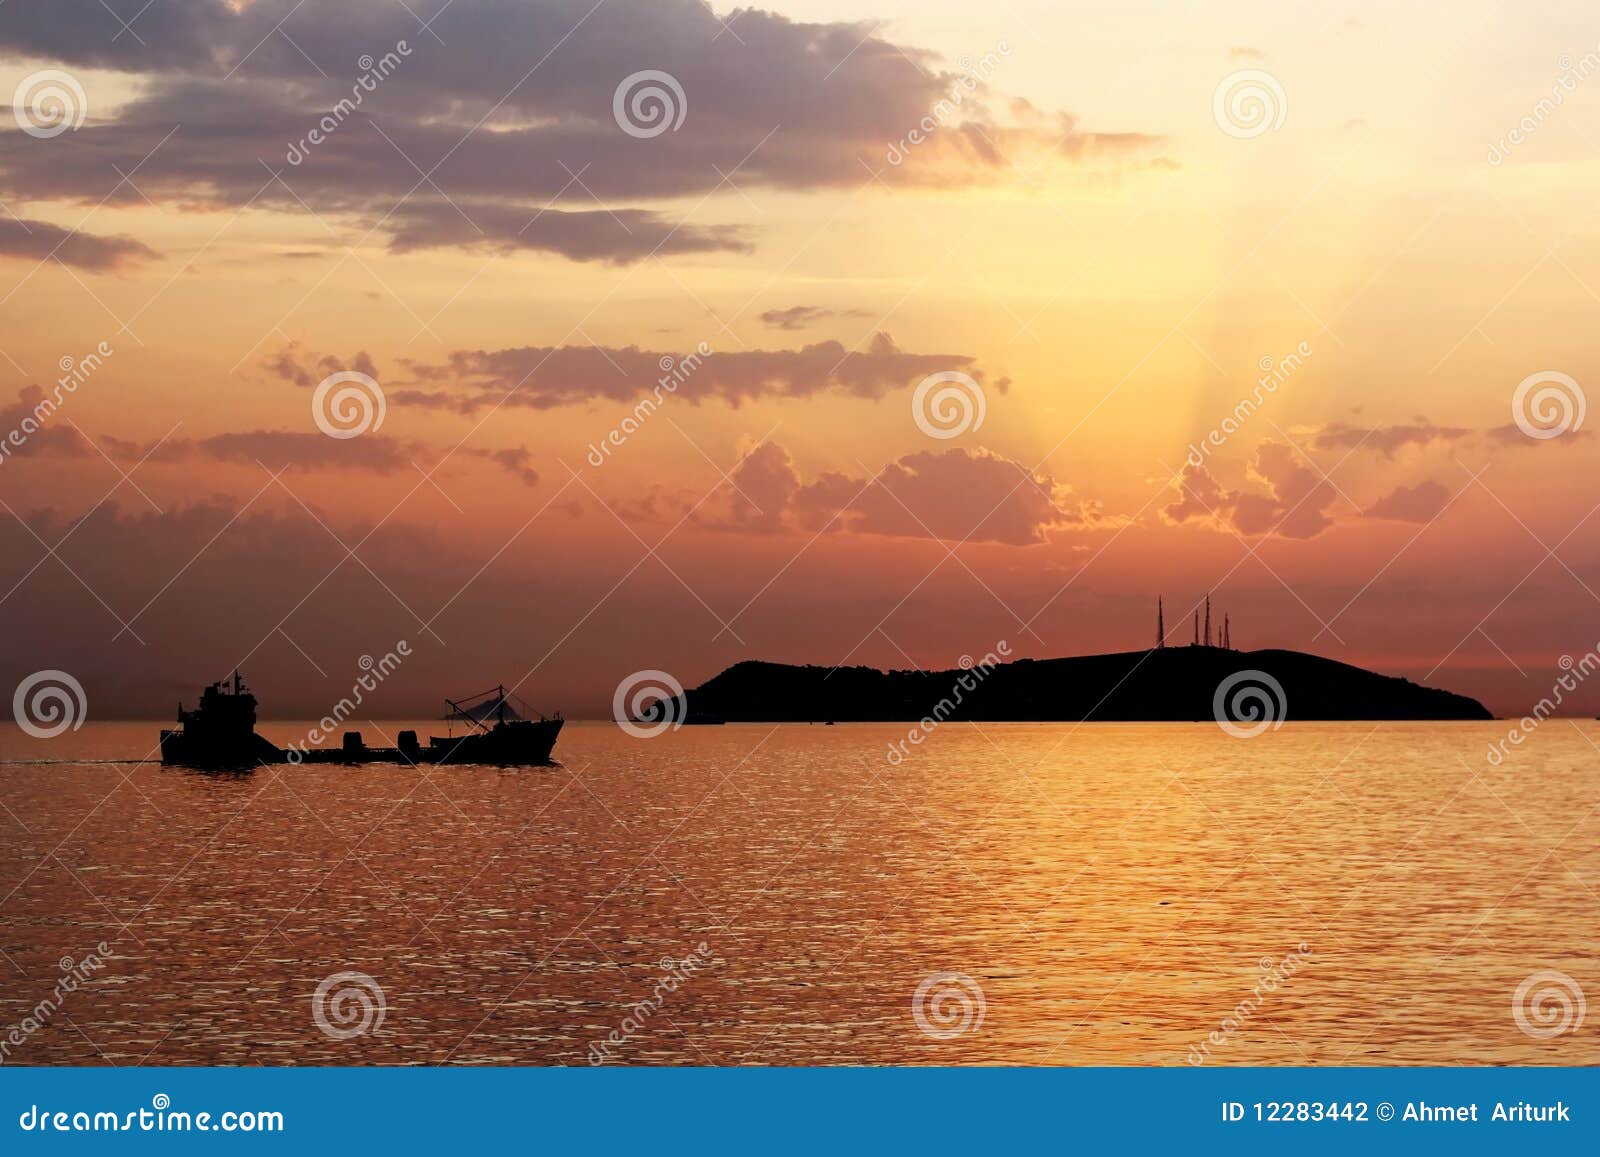 sundown on marmara sea